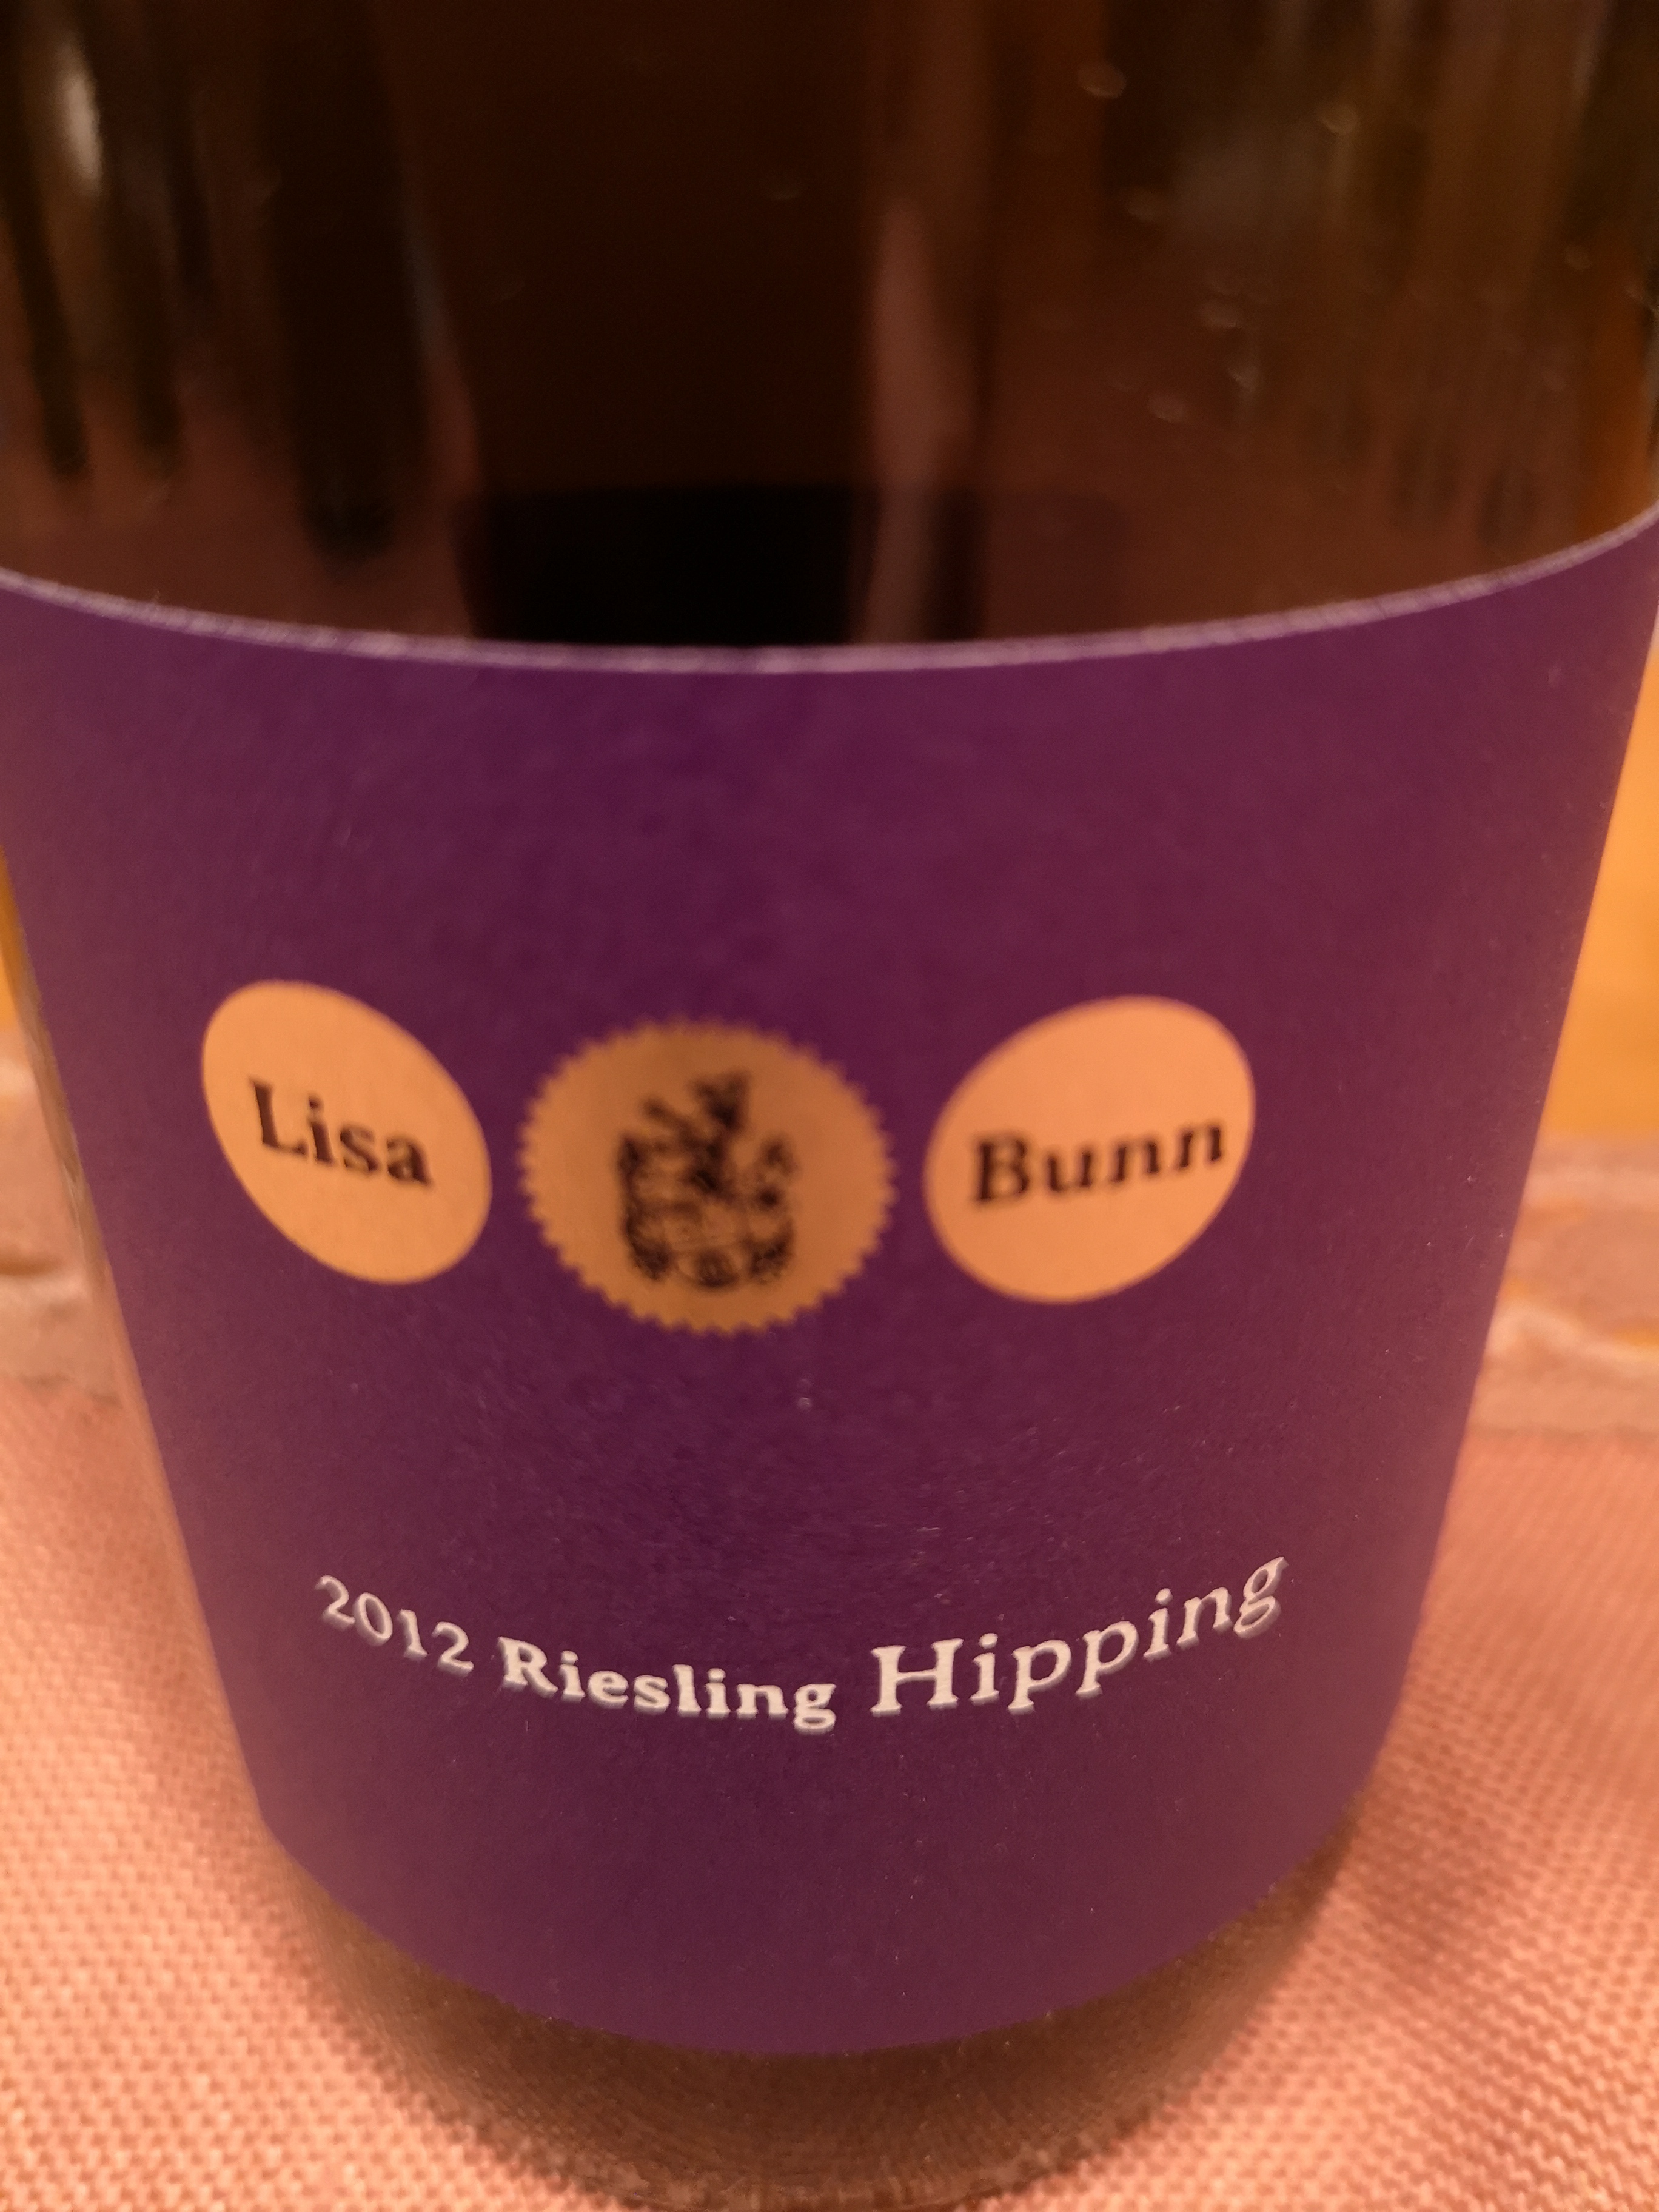 2012 Riesling Hipping | Lisa Bunn